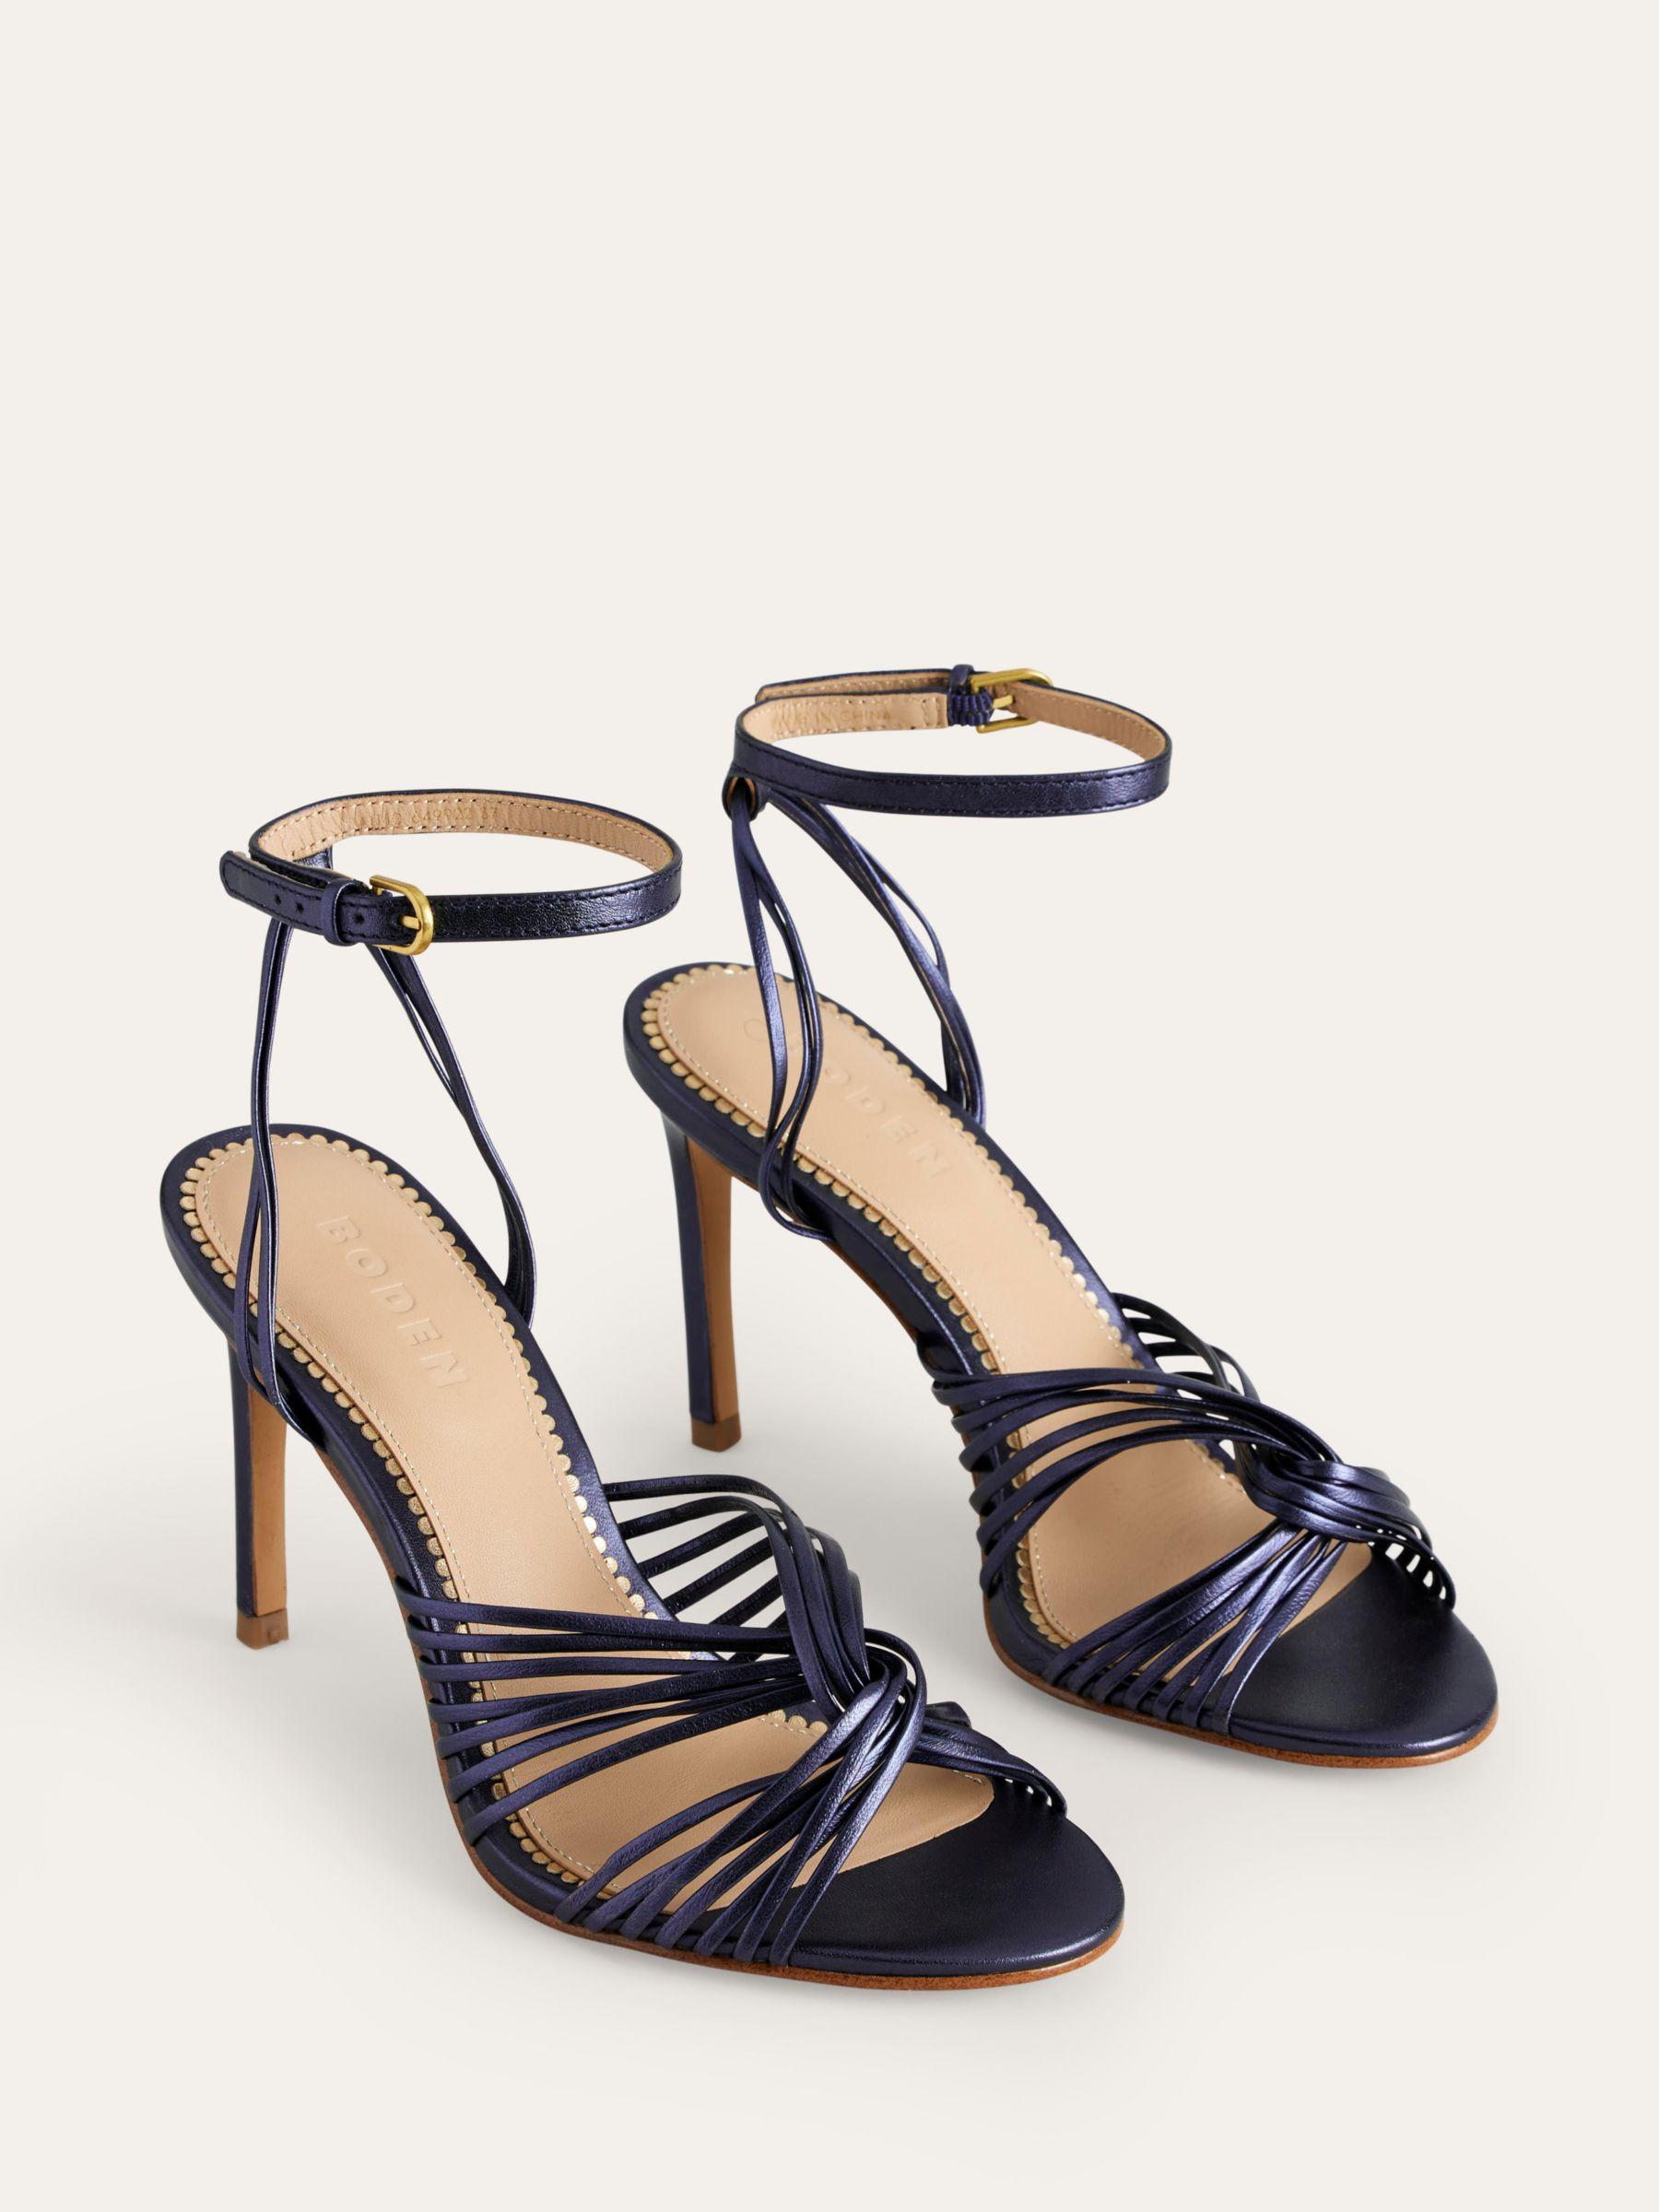 Buy Golden heels under 500 - TrishaStore.com